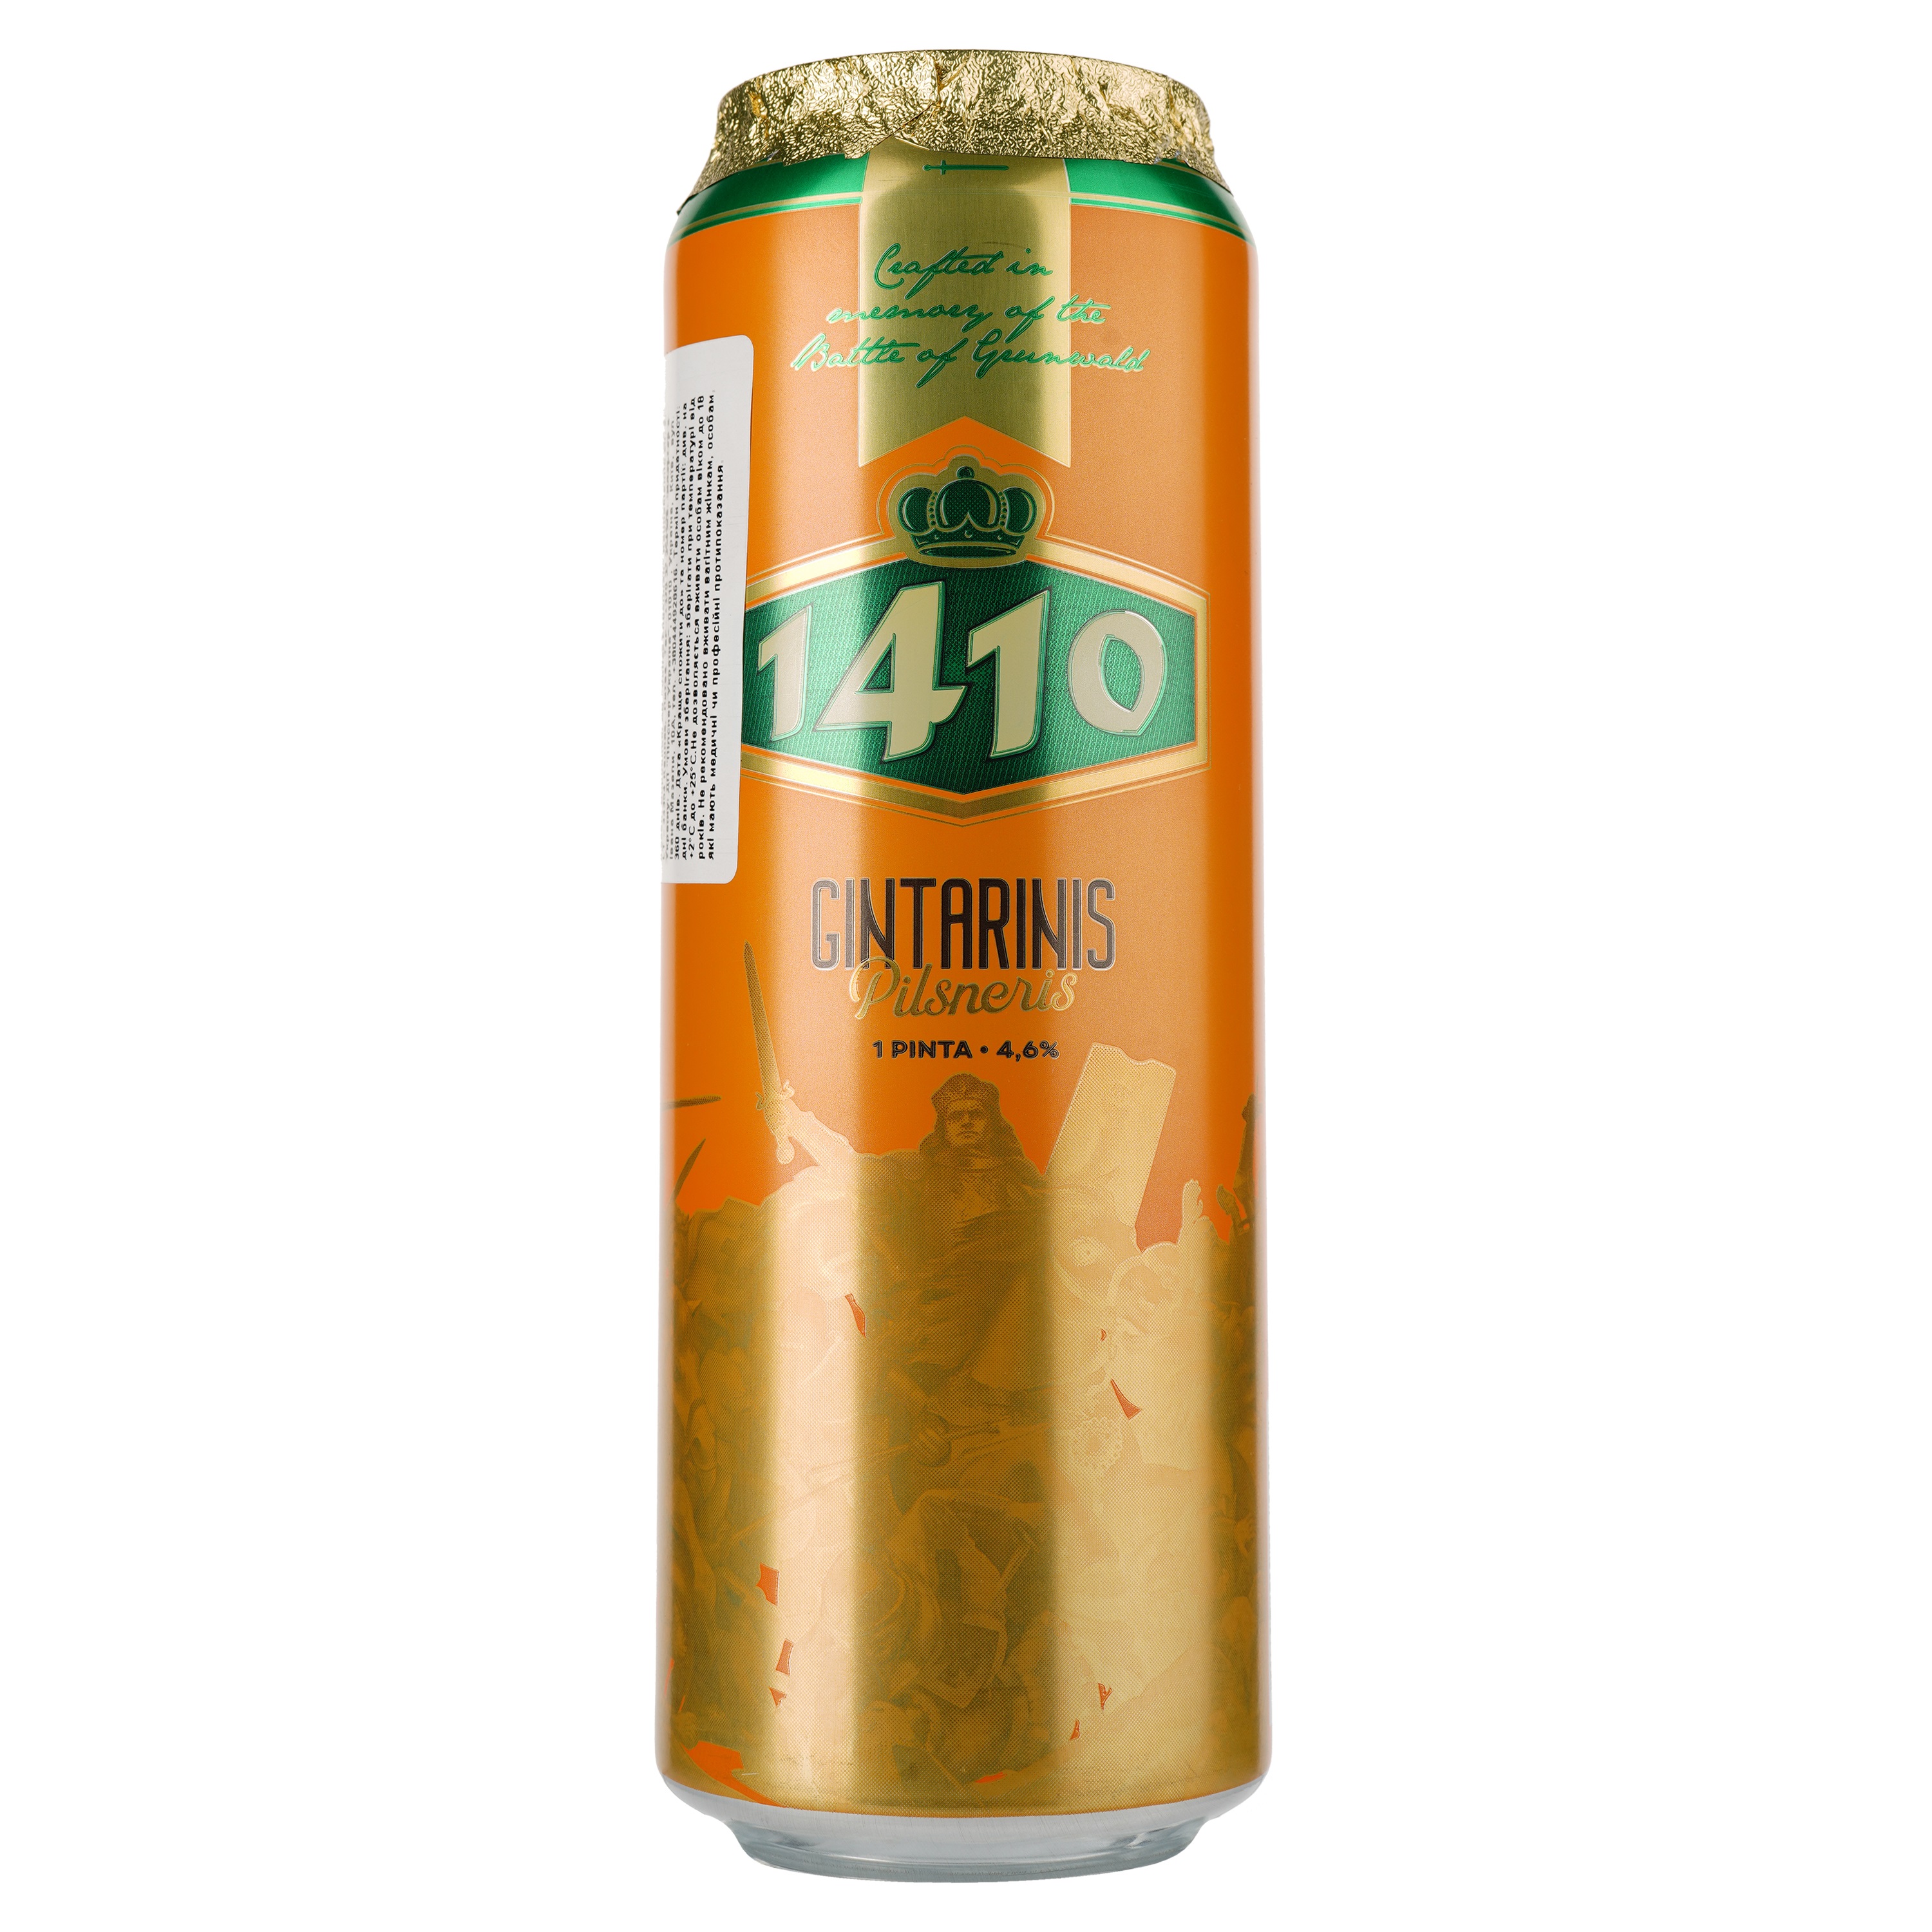 Пиво Volfas Engelman 1410 Amberis светлое, 4.6%, ж/б, 0.568 л - фото 1